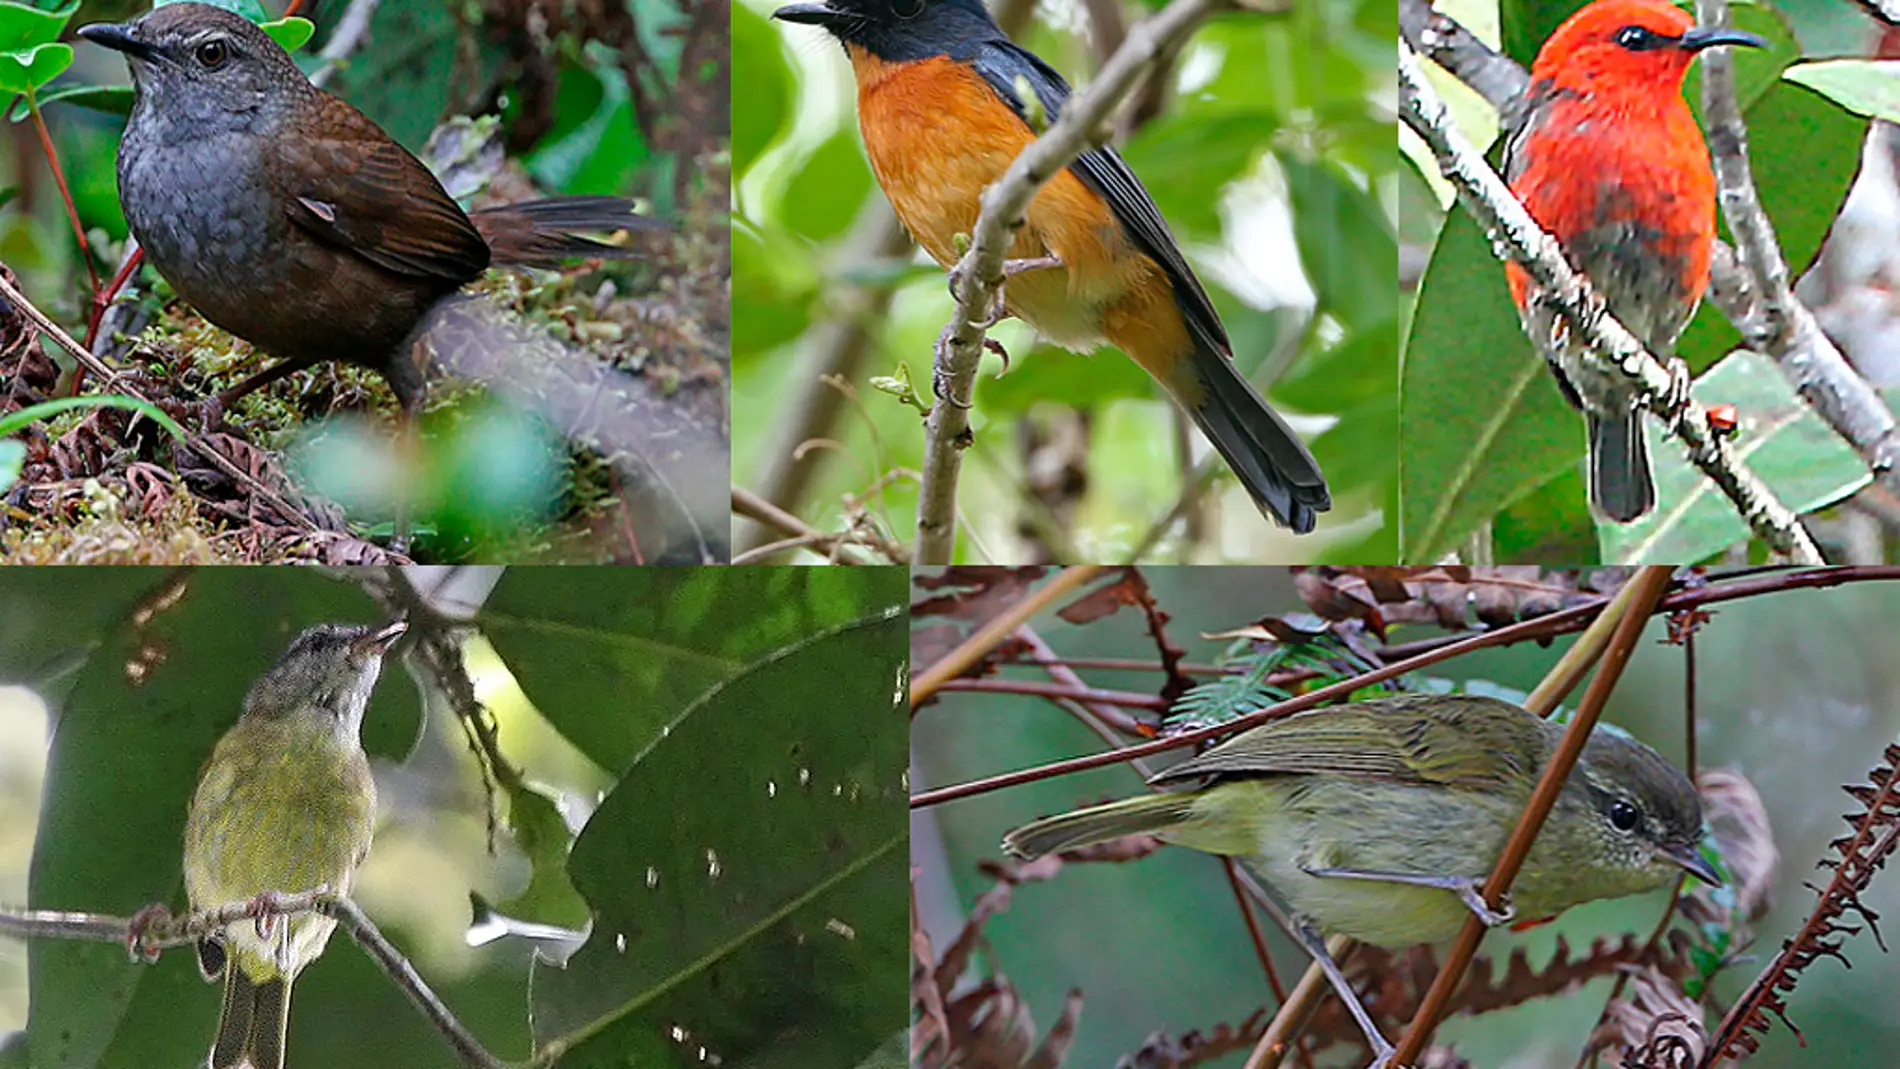 Hallan diez especies y subespecies de pajaros cantores en Indonesia